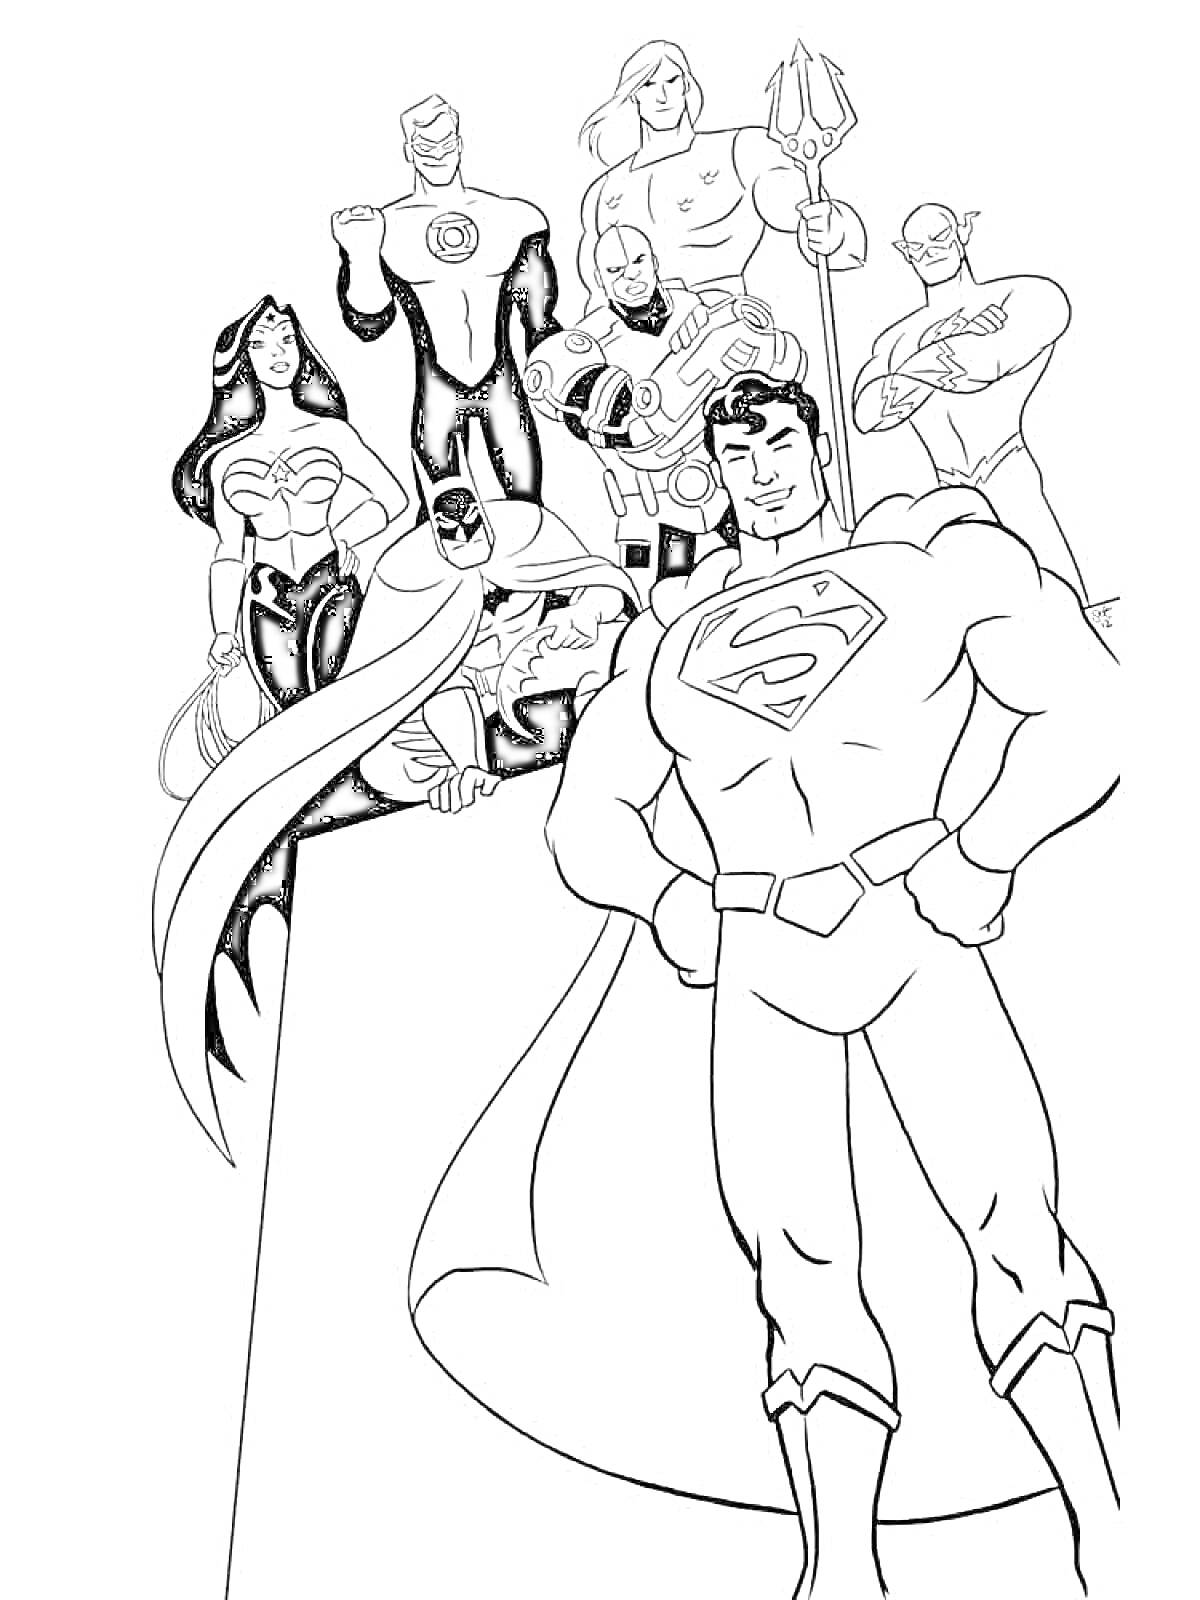 Раскраска Герои Лиги Справедливости: Супермен, Бэтмен, Чудо-женщина, Зелёный Фонарь, Аквамен, Флэш и Марсианский охотник на белом фоне